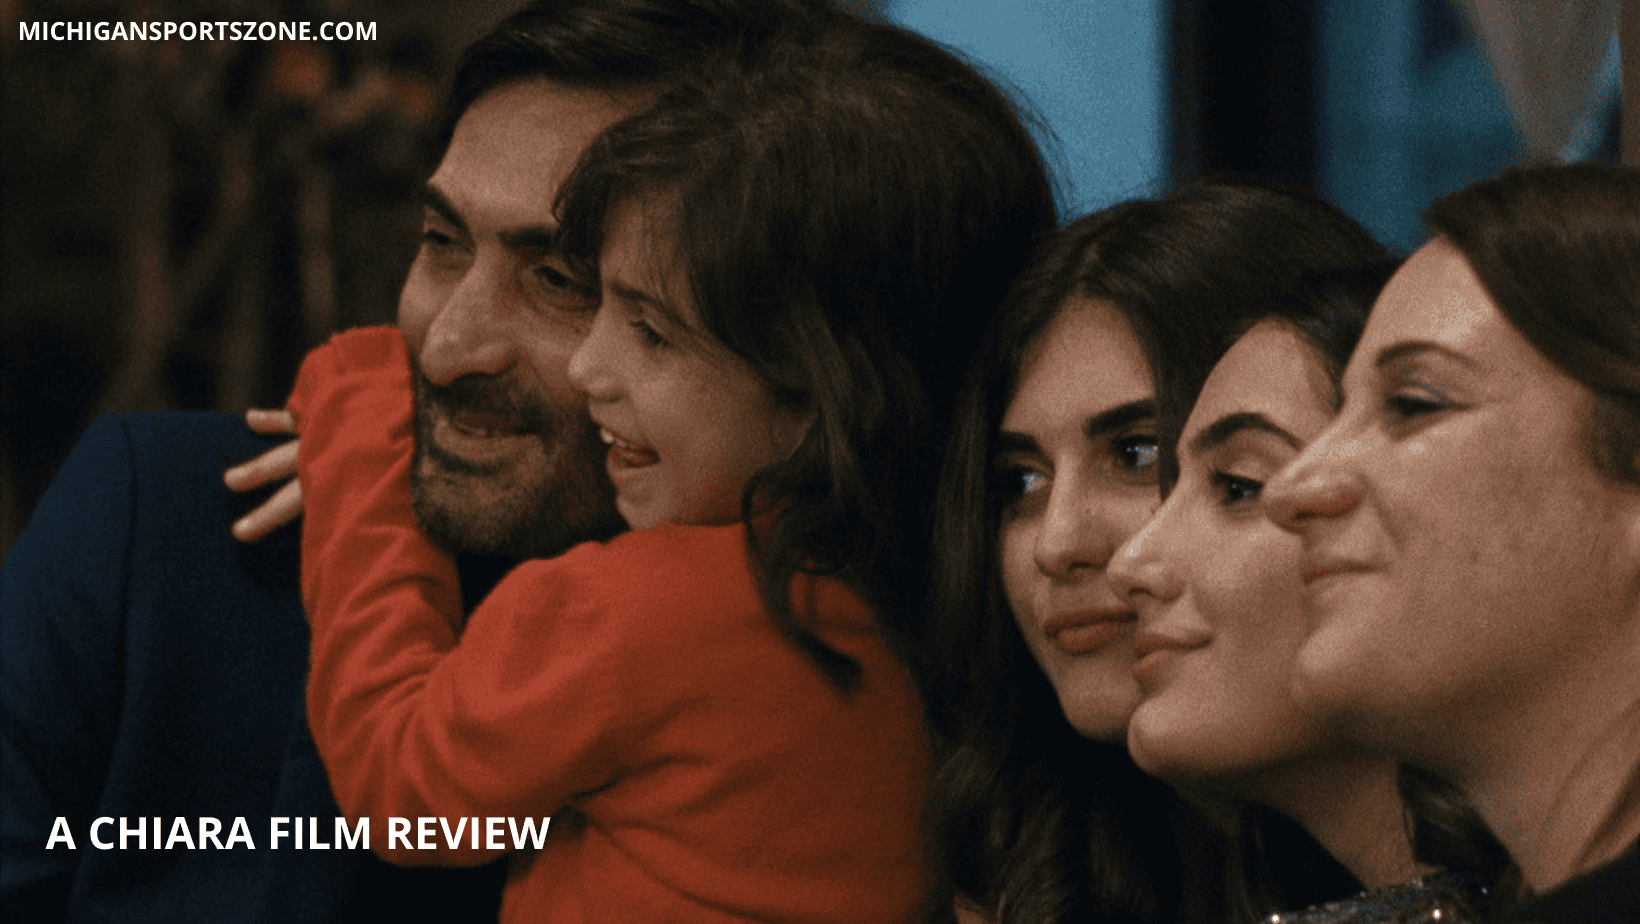 A Chiara Film Review